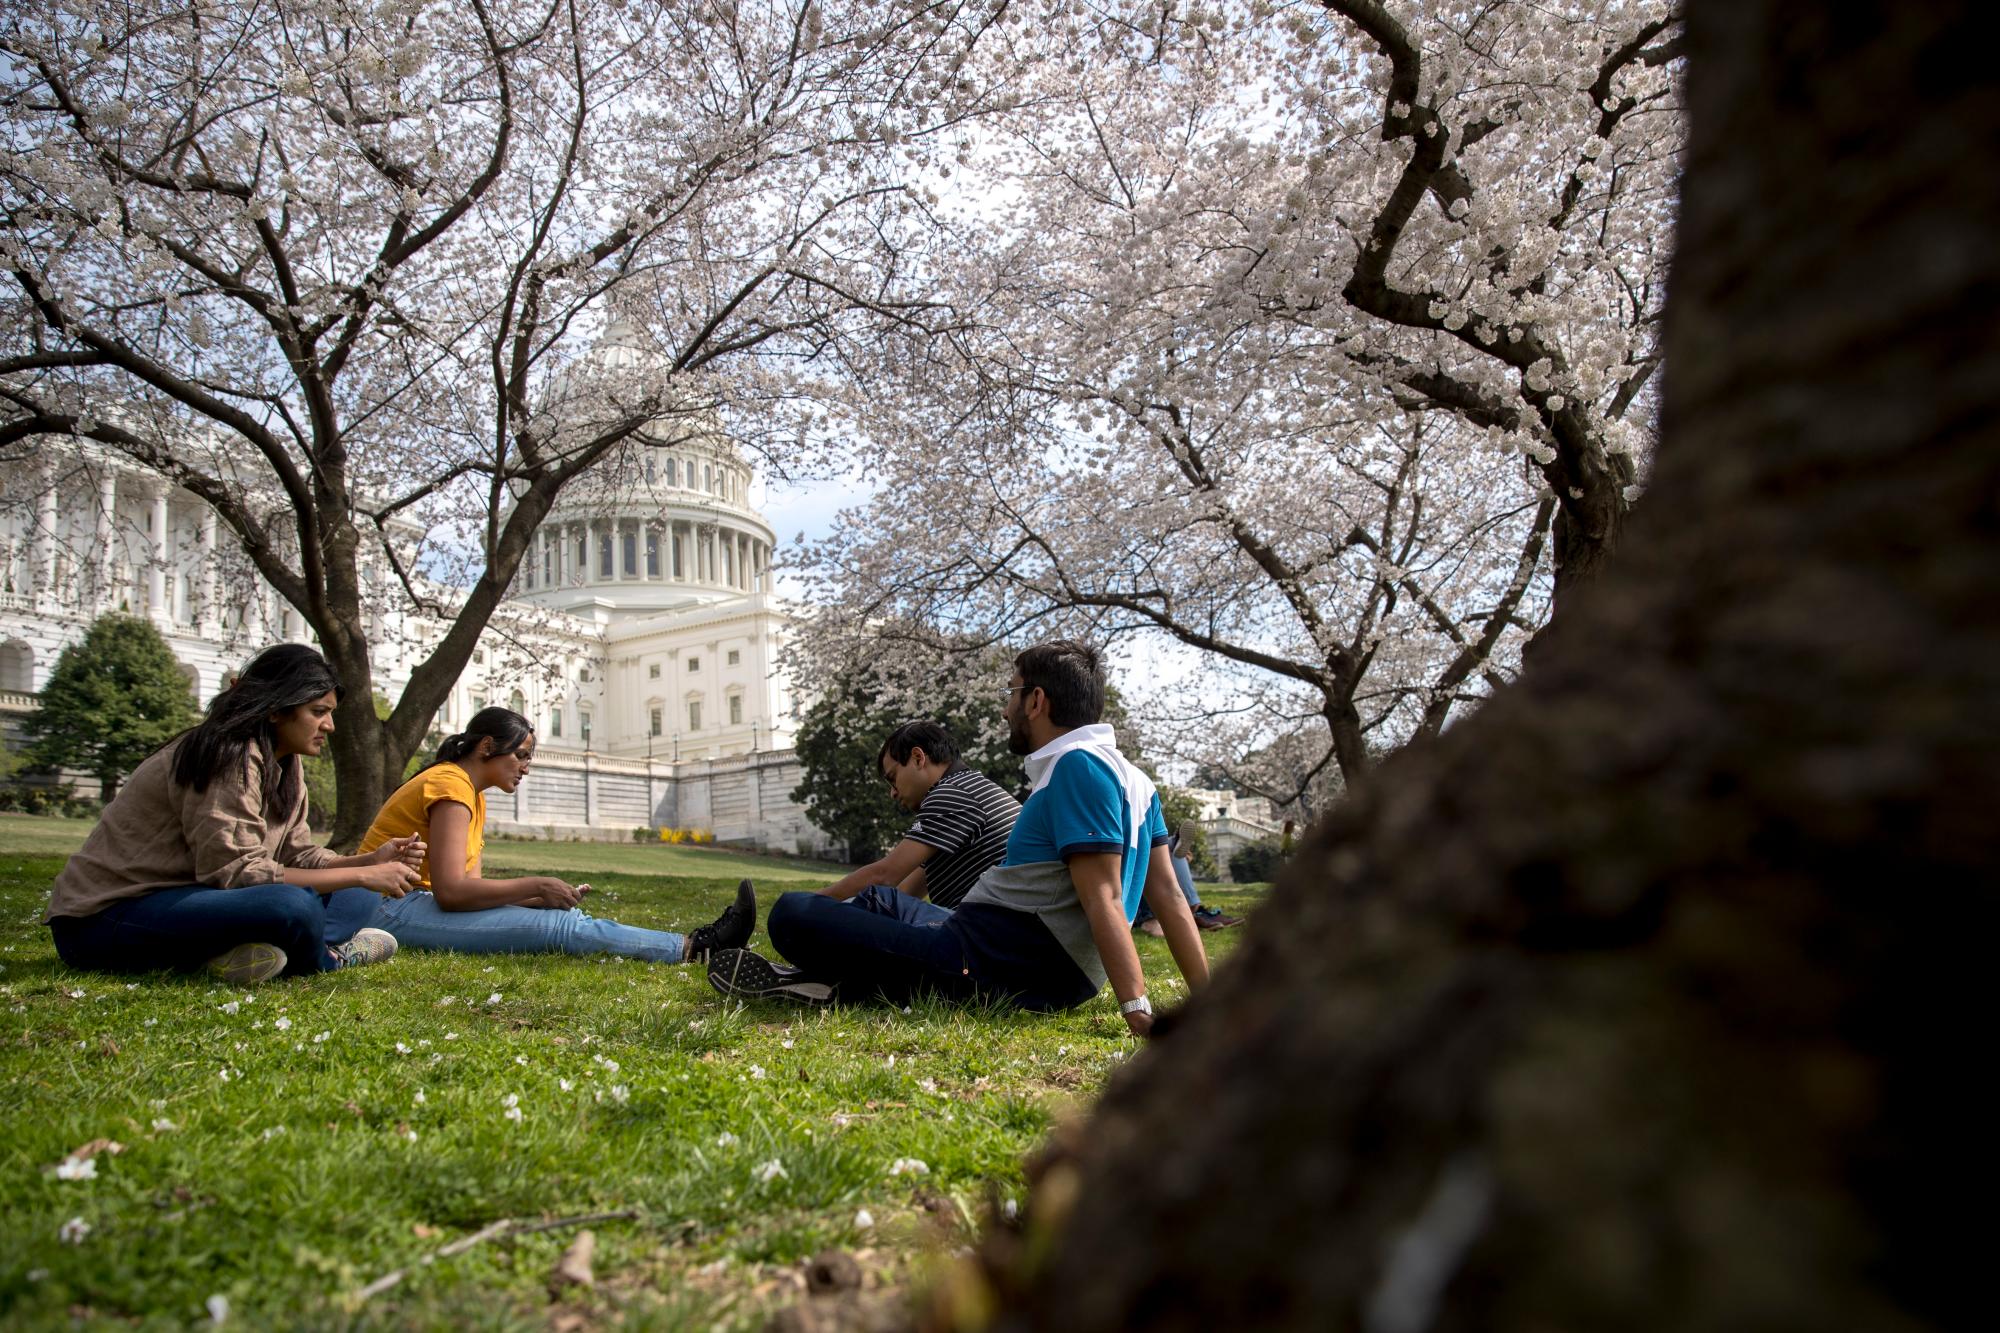 La Cúpula del edificio del Capitolio de los Estados Unidos es visible cuando florecen los cerezos en flor en West Lawn, el sábado 30 de marzo de 2019, en Washington. La floración máxima se espera el 1 de abril, según el Servicio de Parques Nacionales.